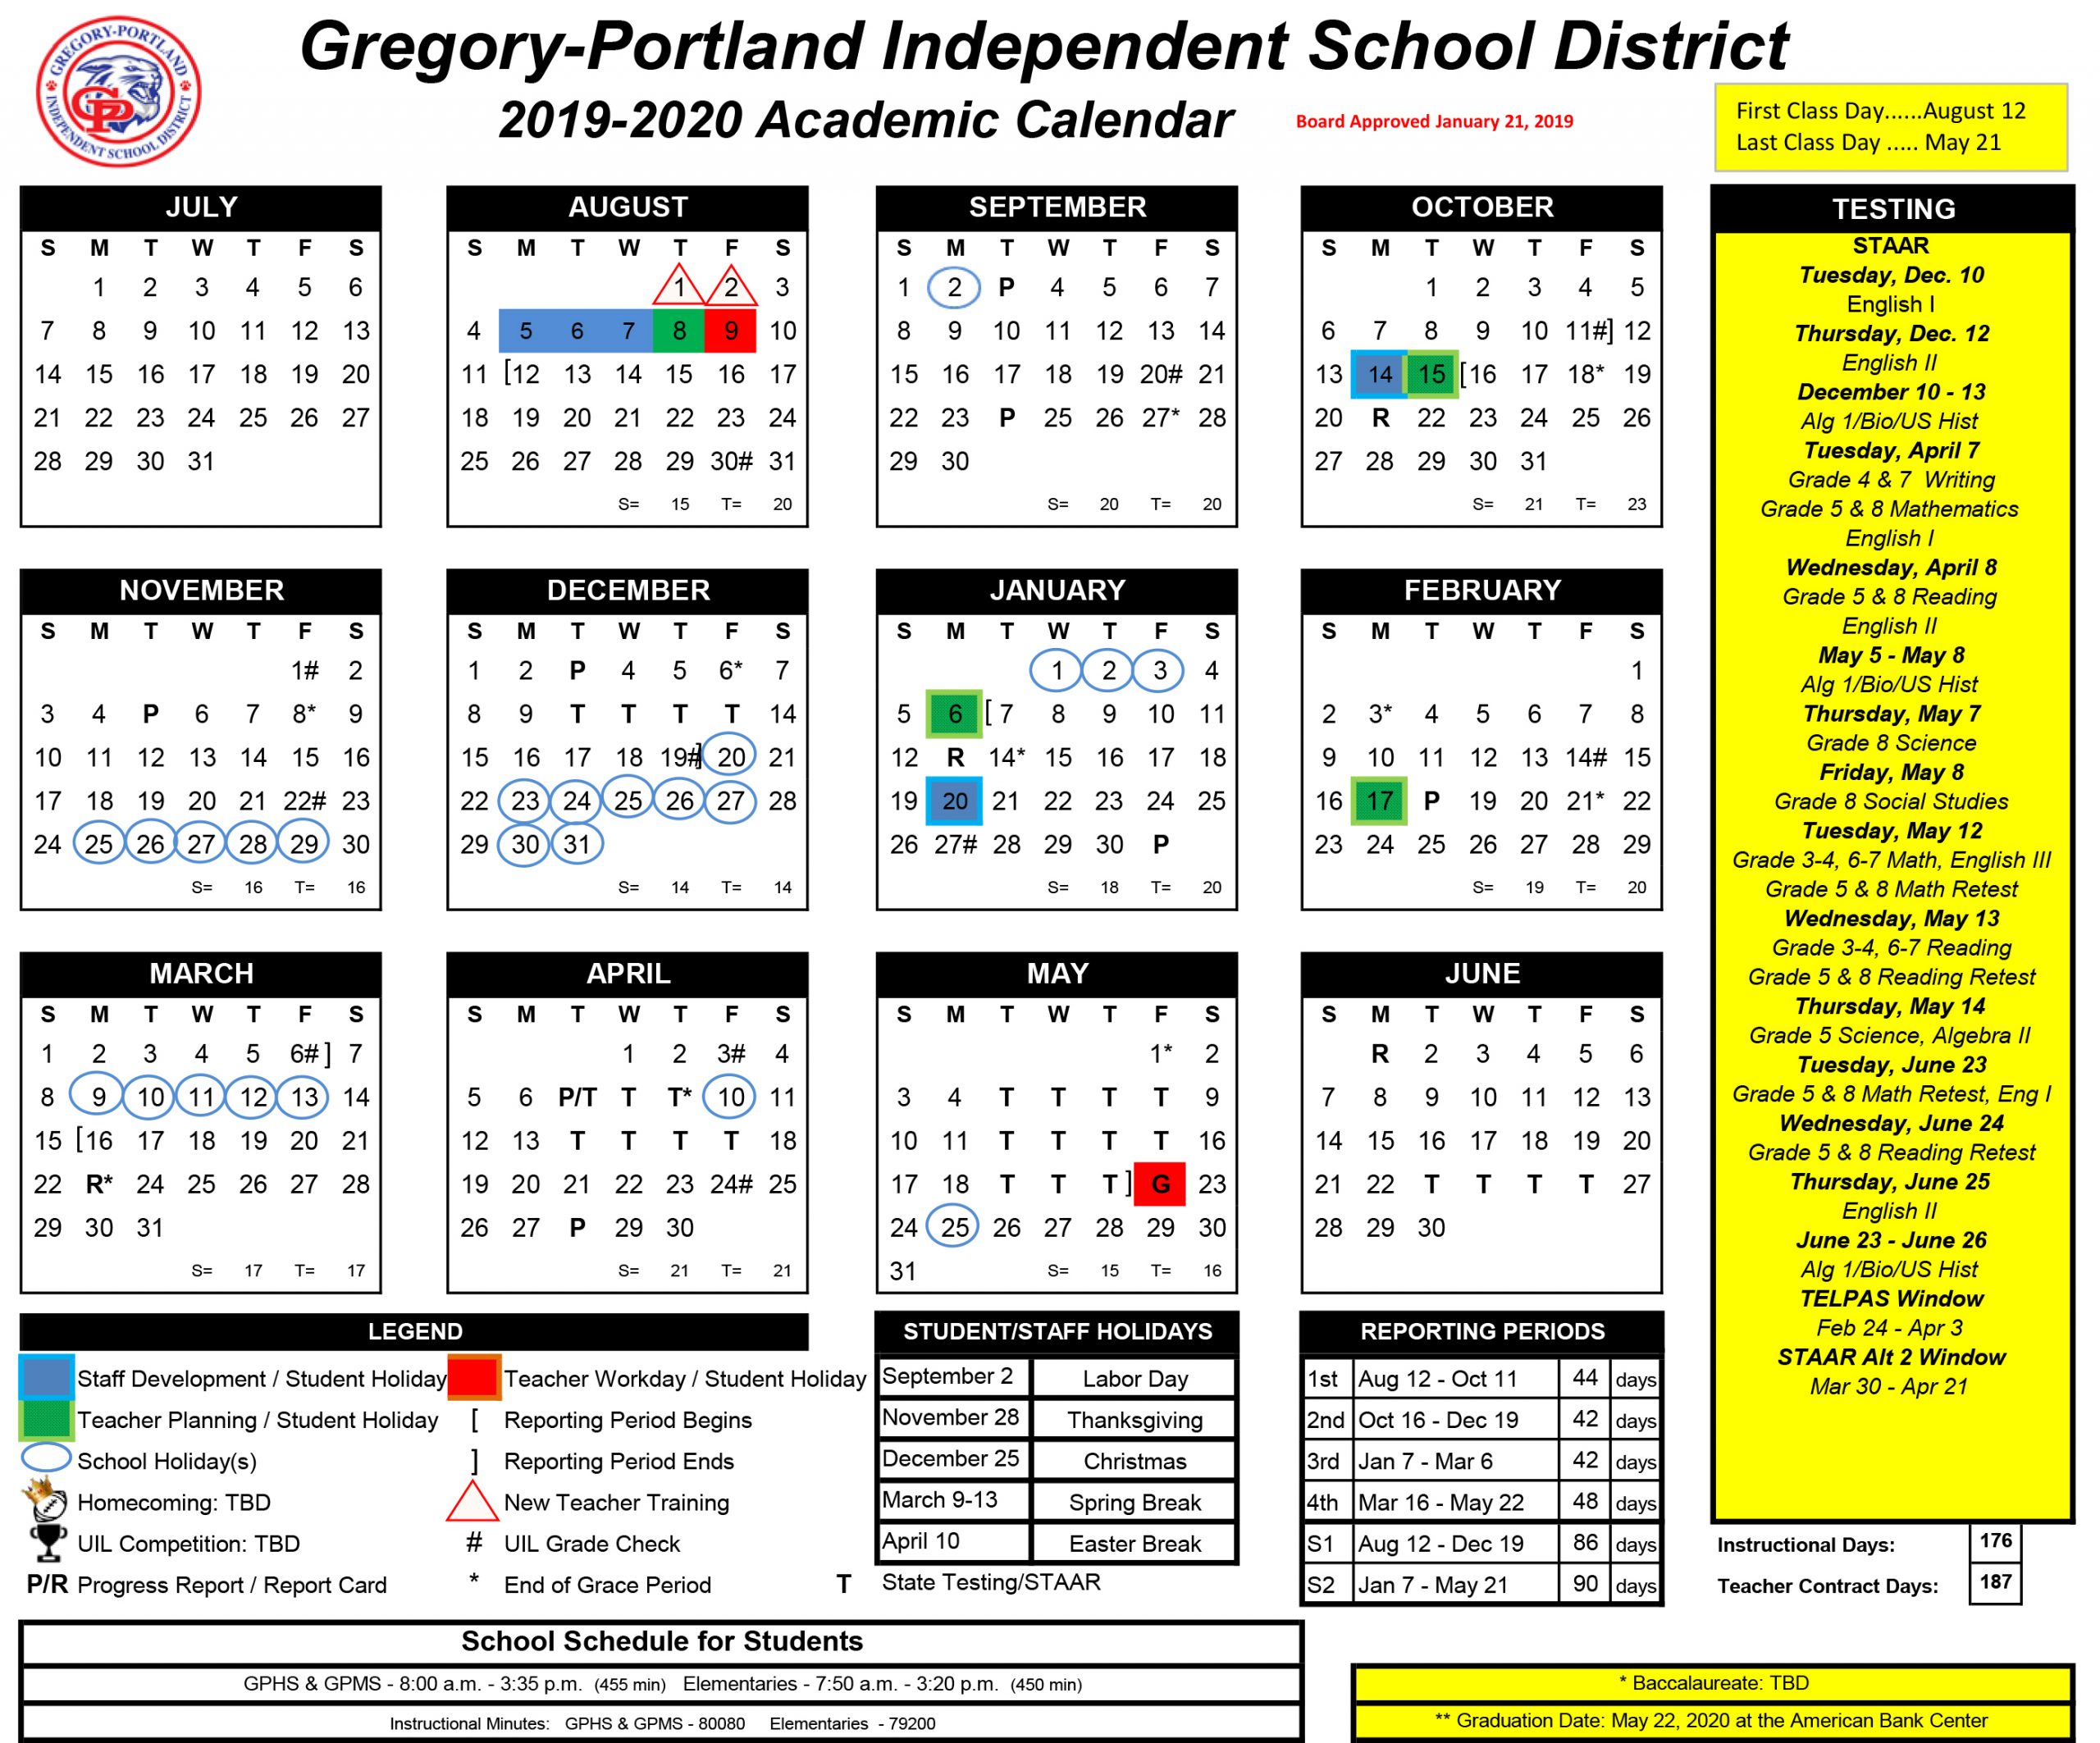 District Calendar, 2019-20 - Gregory-Portland Independent